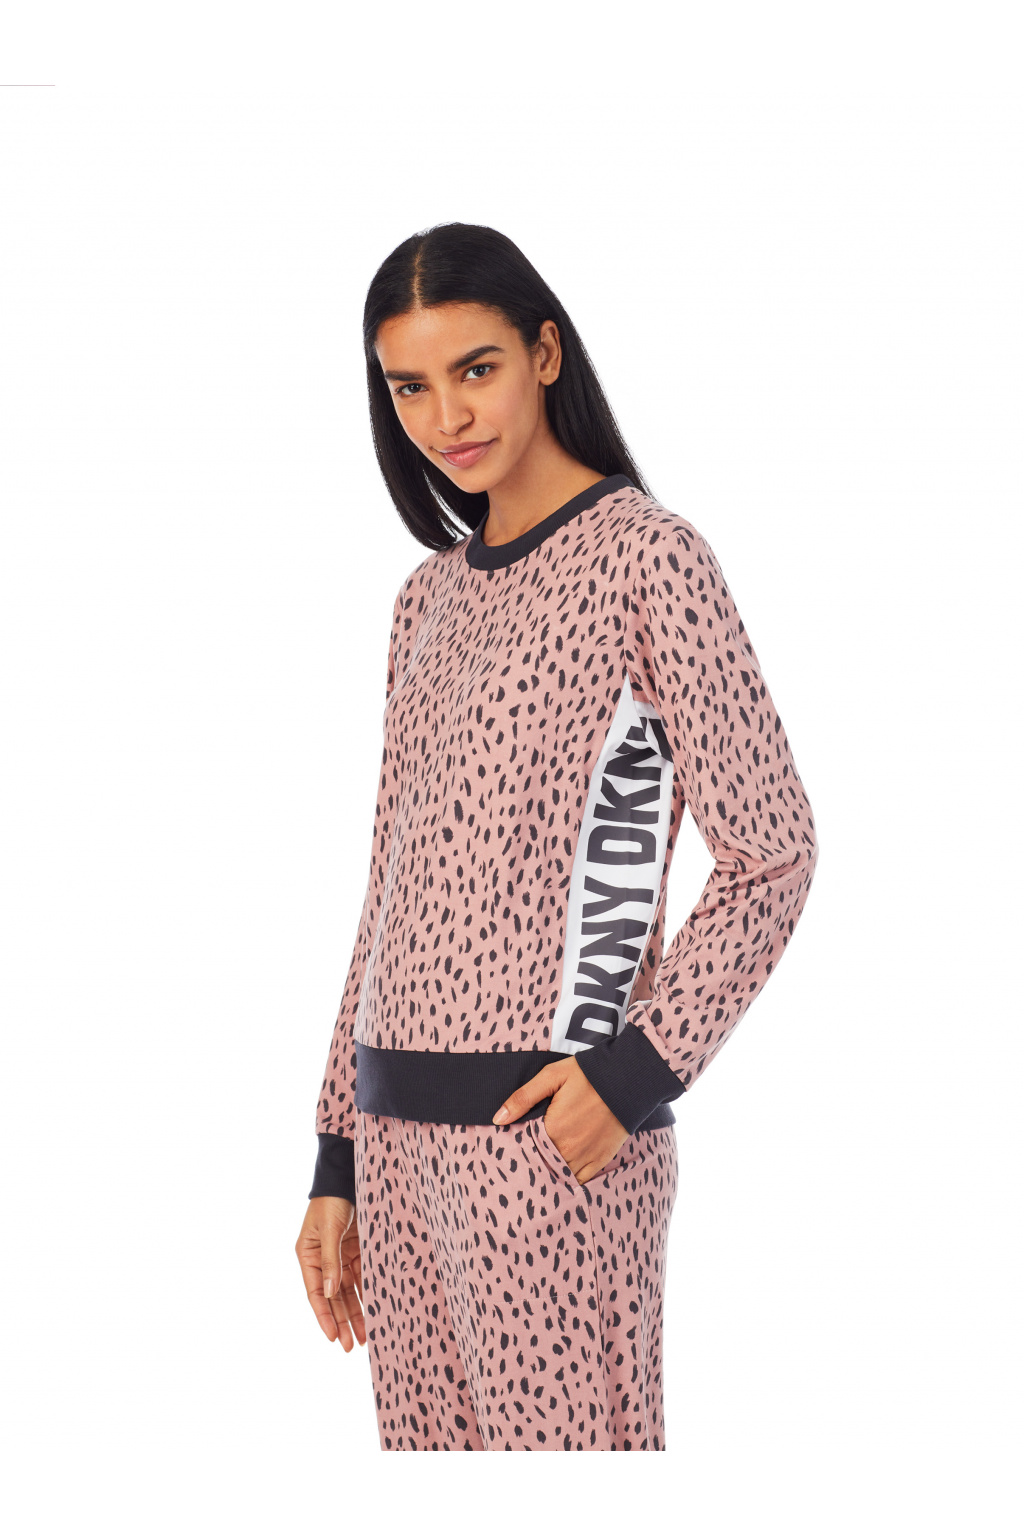 DKNY pyžamo mikina + tepláky - růžová